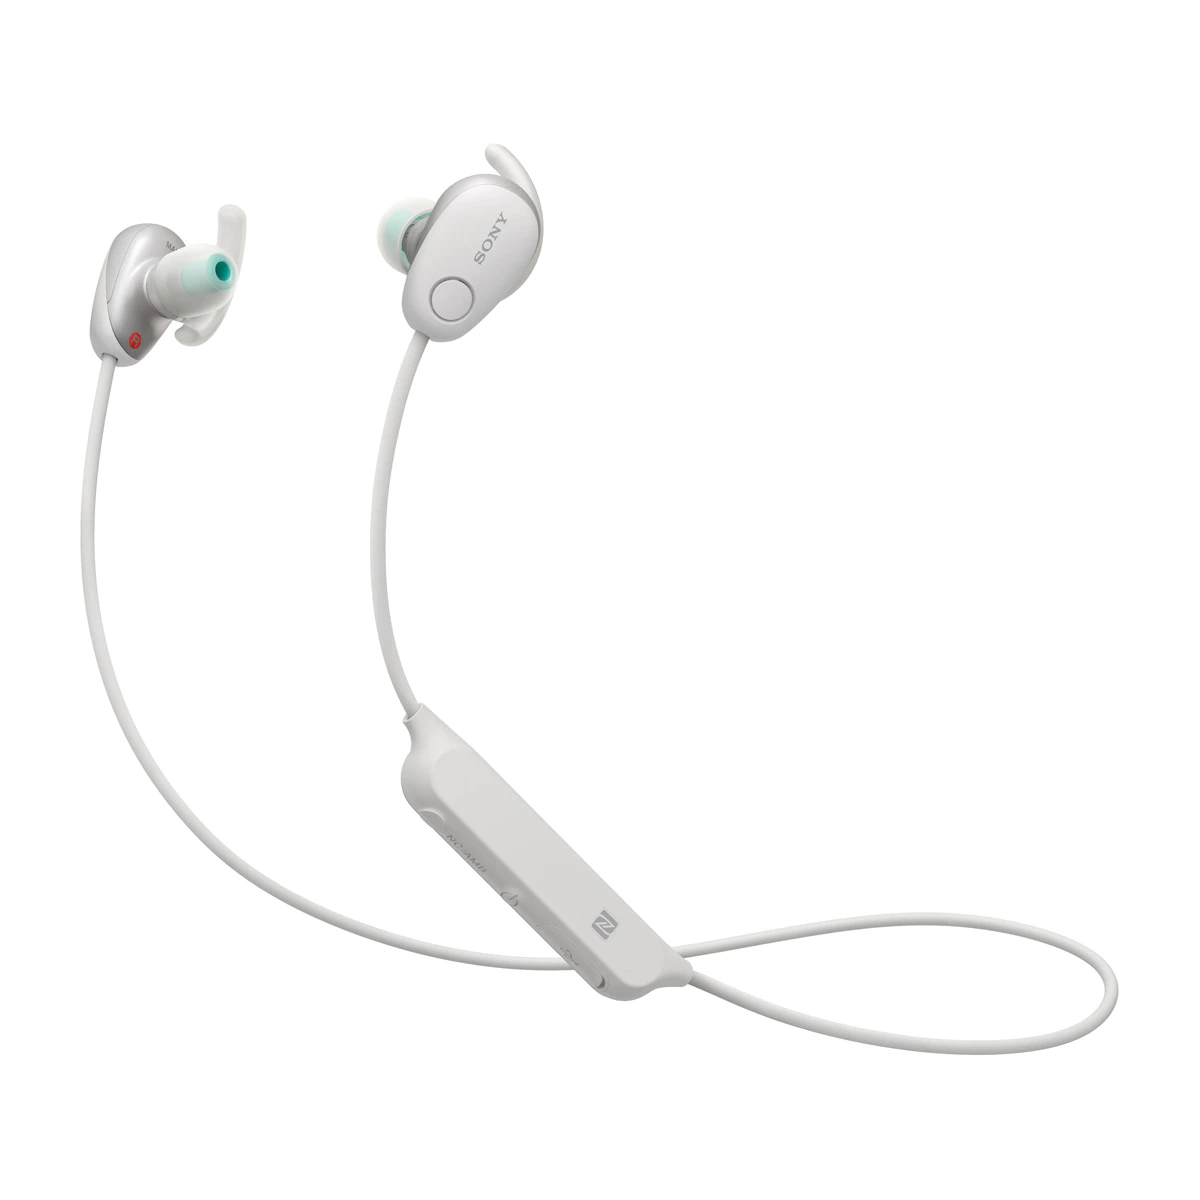 Auriculares deportivos de botón Sony WI-SP600N Blanco Noise Cancelling, NFC/Bluetooth con micrófono